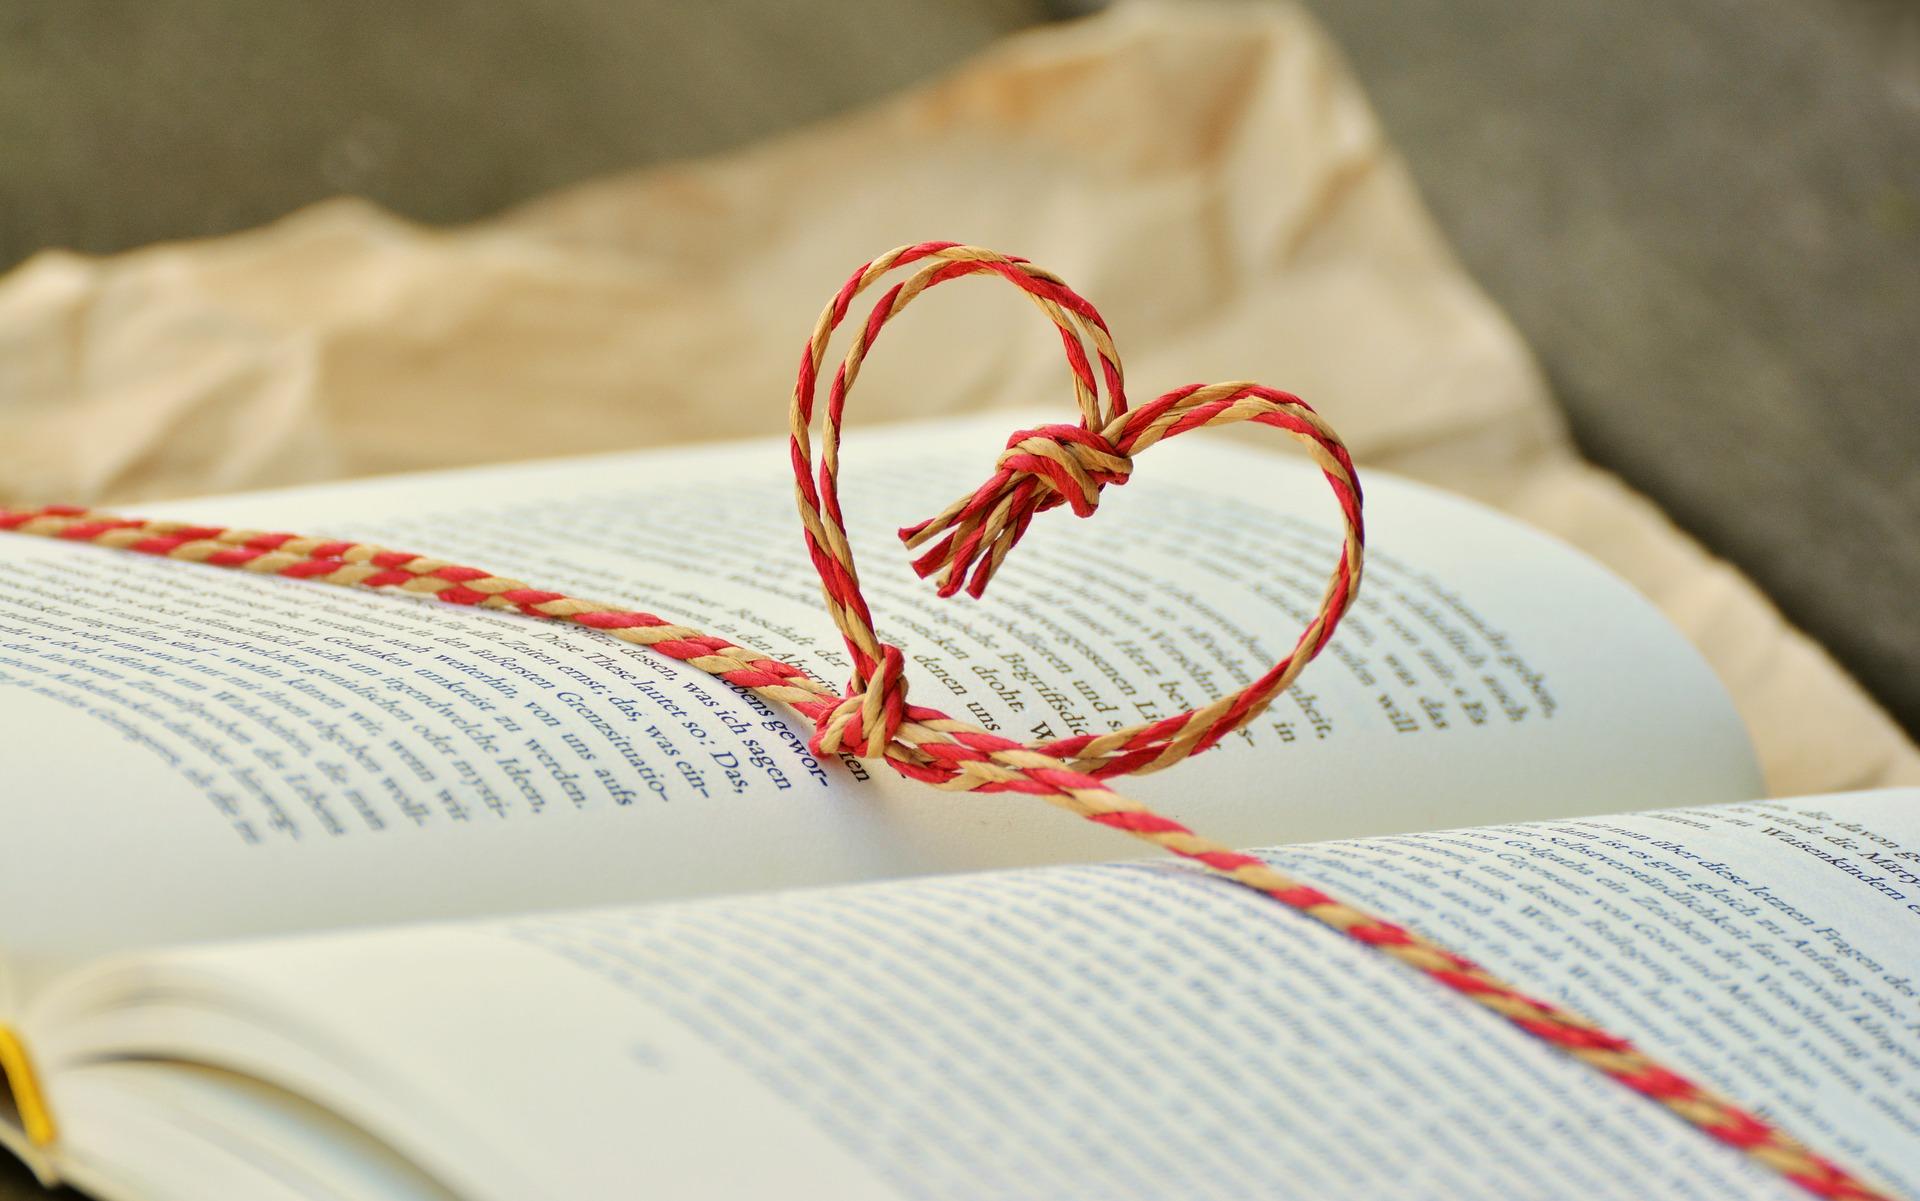 Stimmungsbild zum Beitrag: Ein aufgeschlagenes Buch, um das ein Band mit Herzform geknüpft ist, wird abgebildet.